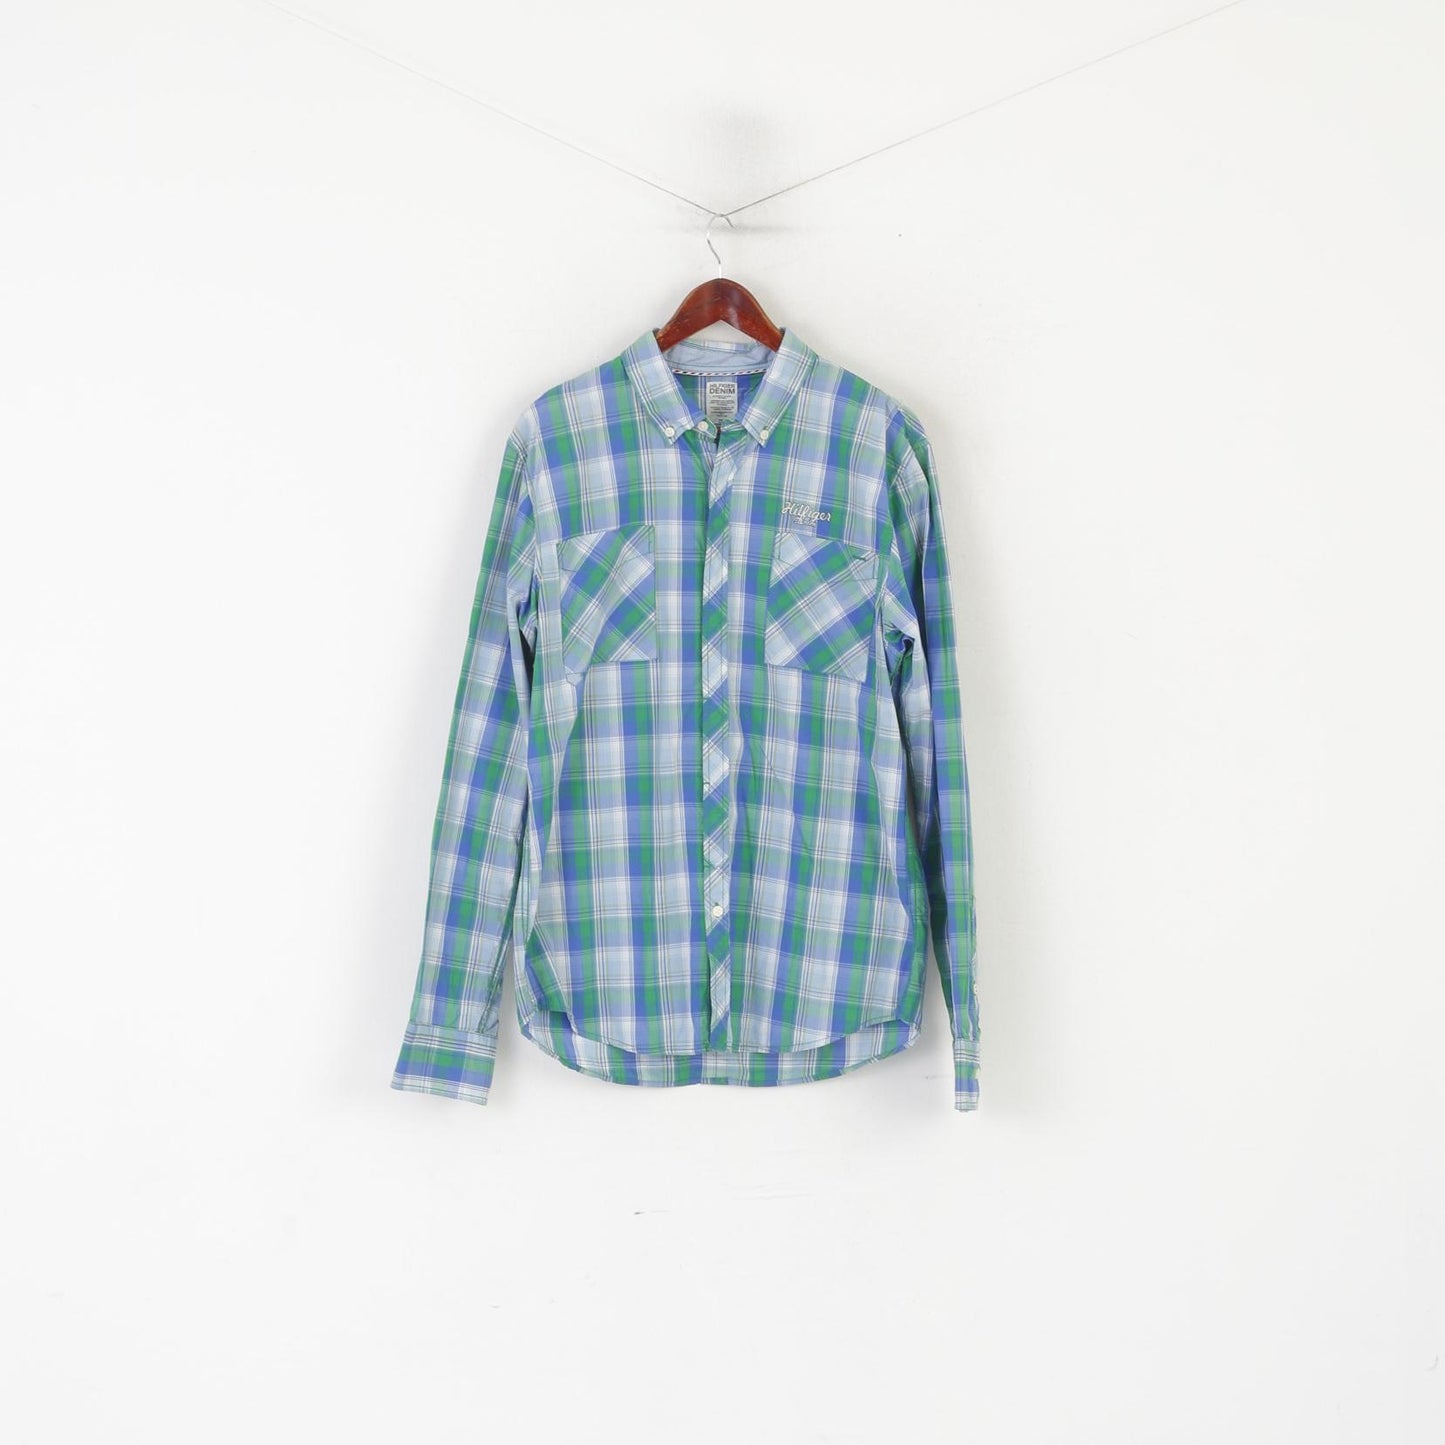 Hilfiger Denim Uomo XL (L) Camicia casual Top in cotone blu a quadretti con colletto button down